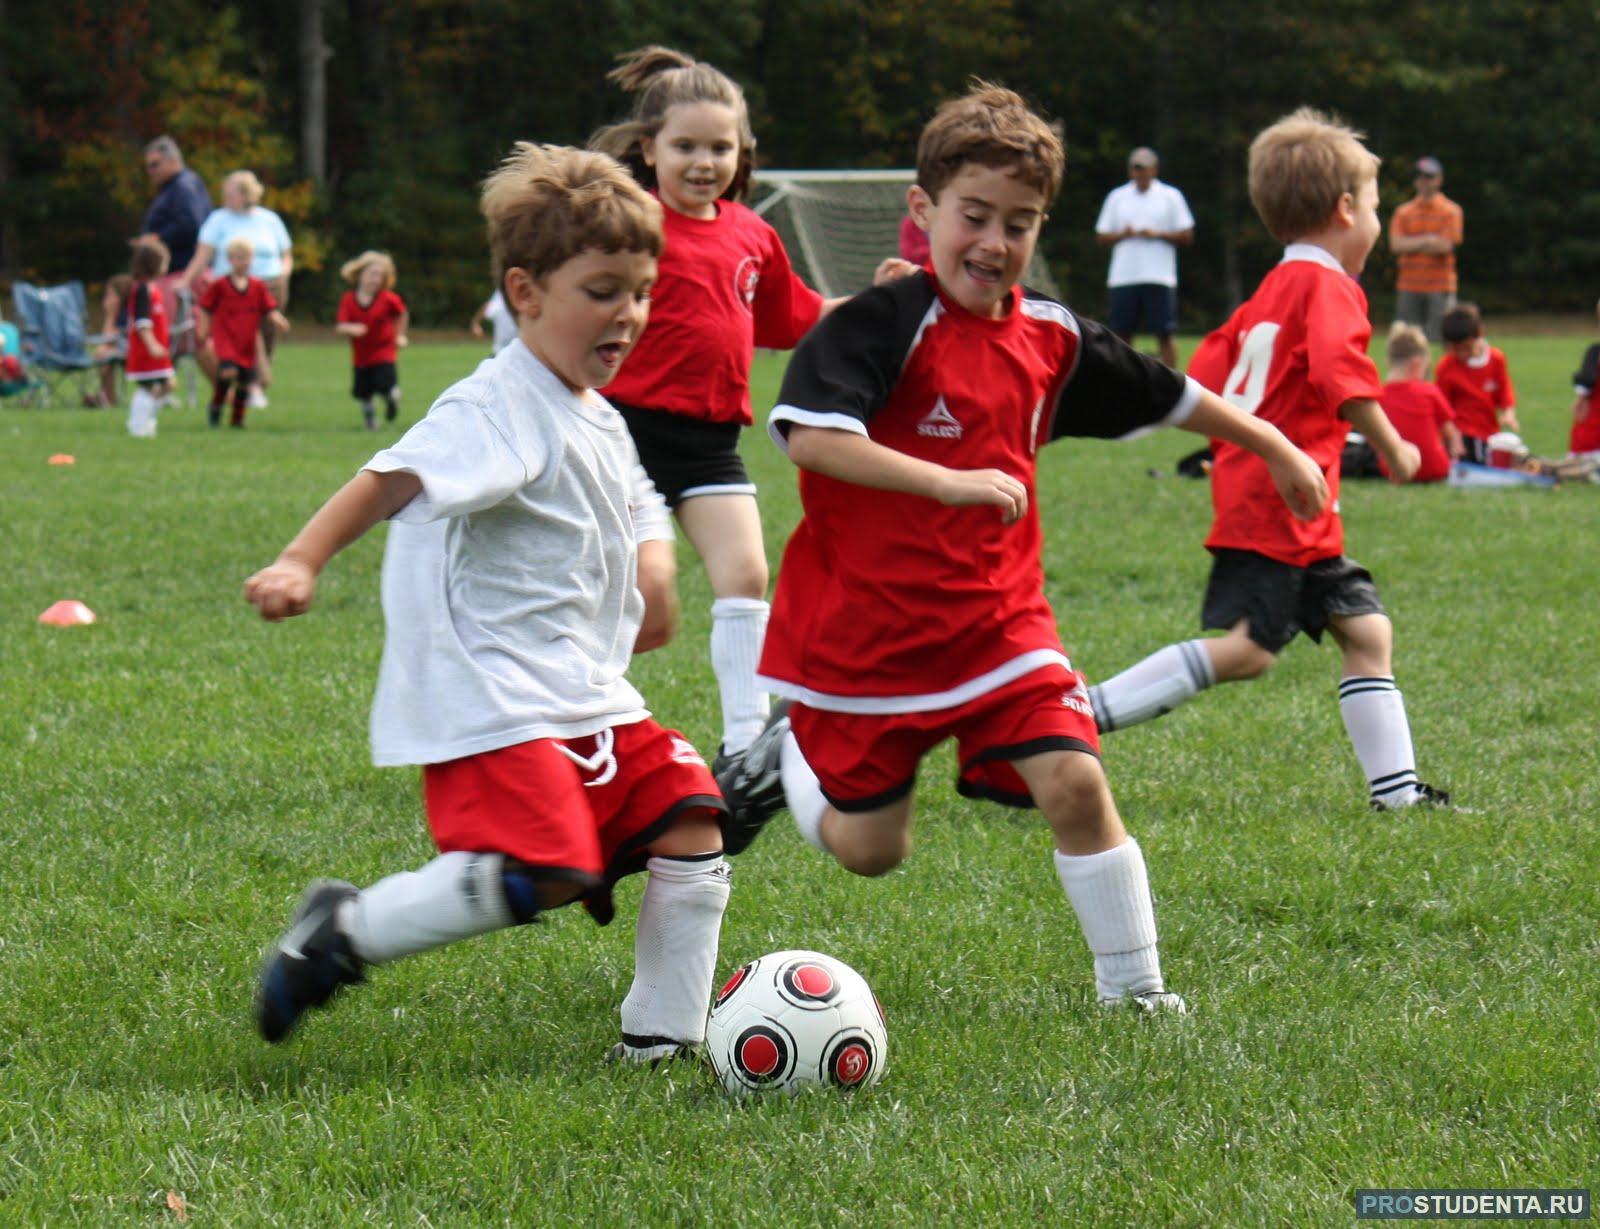 Футбол играли пели. Дети играющие в футбол. Детский футбол. Игра для детей "футбол". Мальчик играет в футбол.